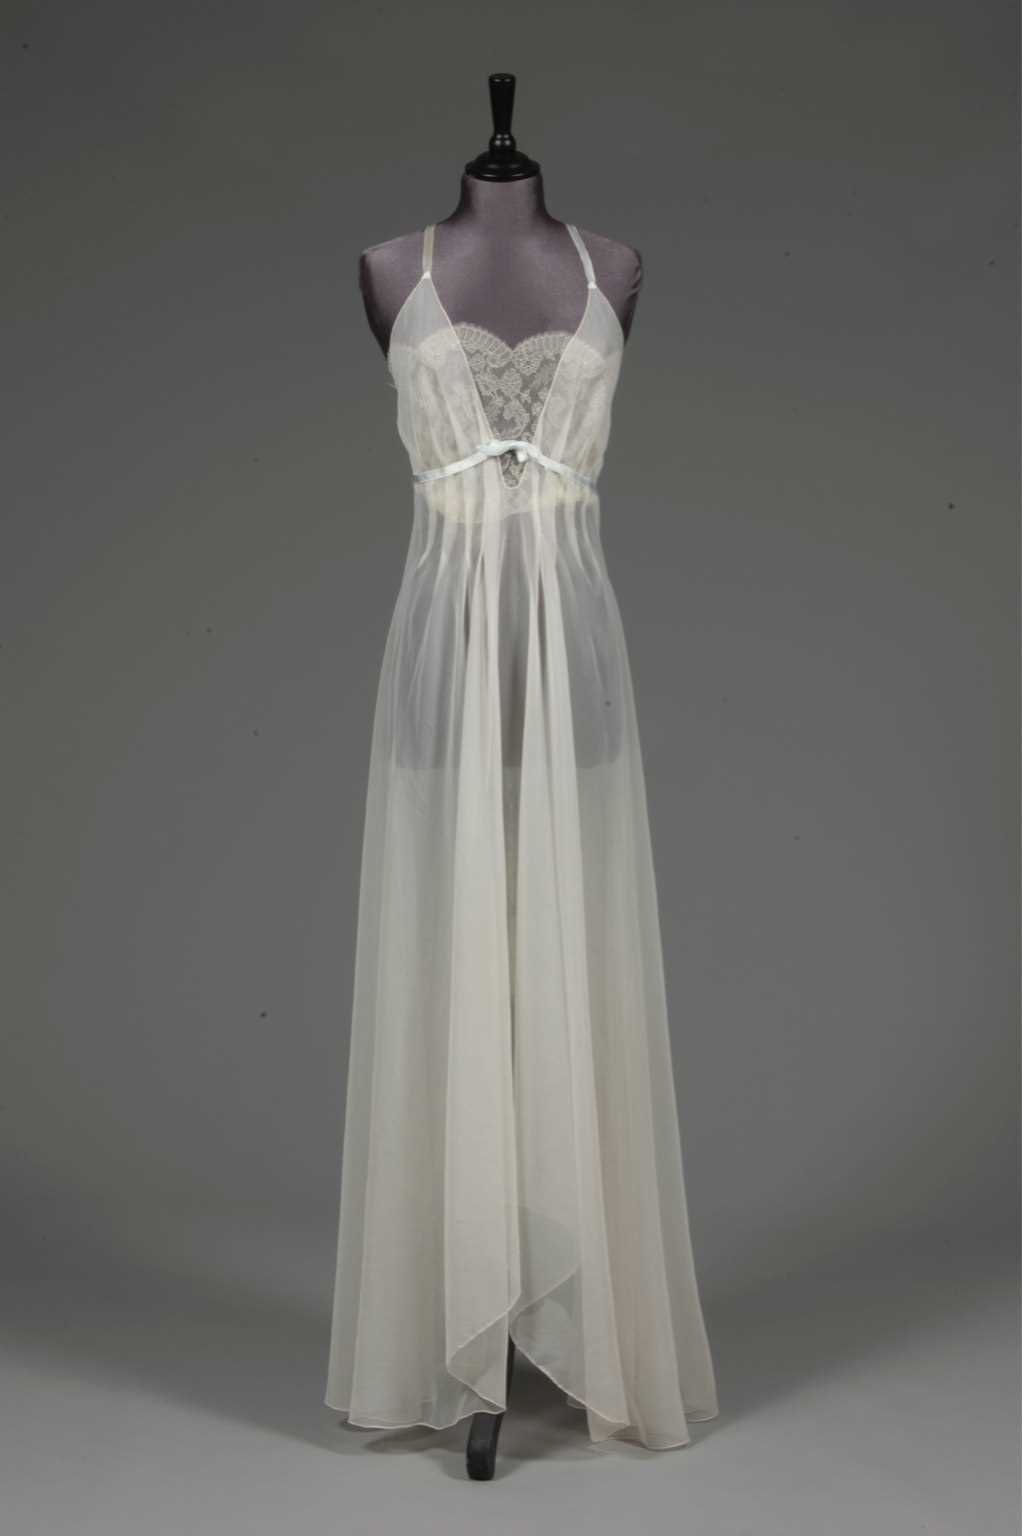 Lot 91 - An ivory chiffon nightdress, 1950s, with lace